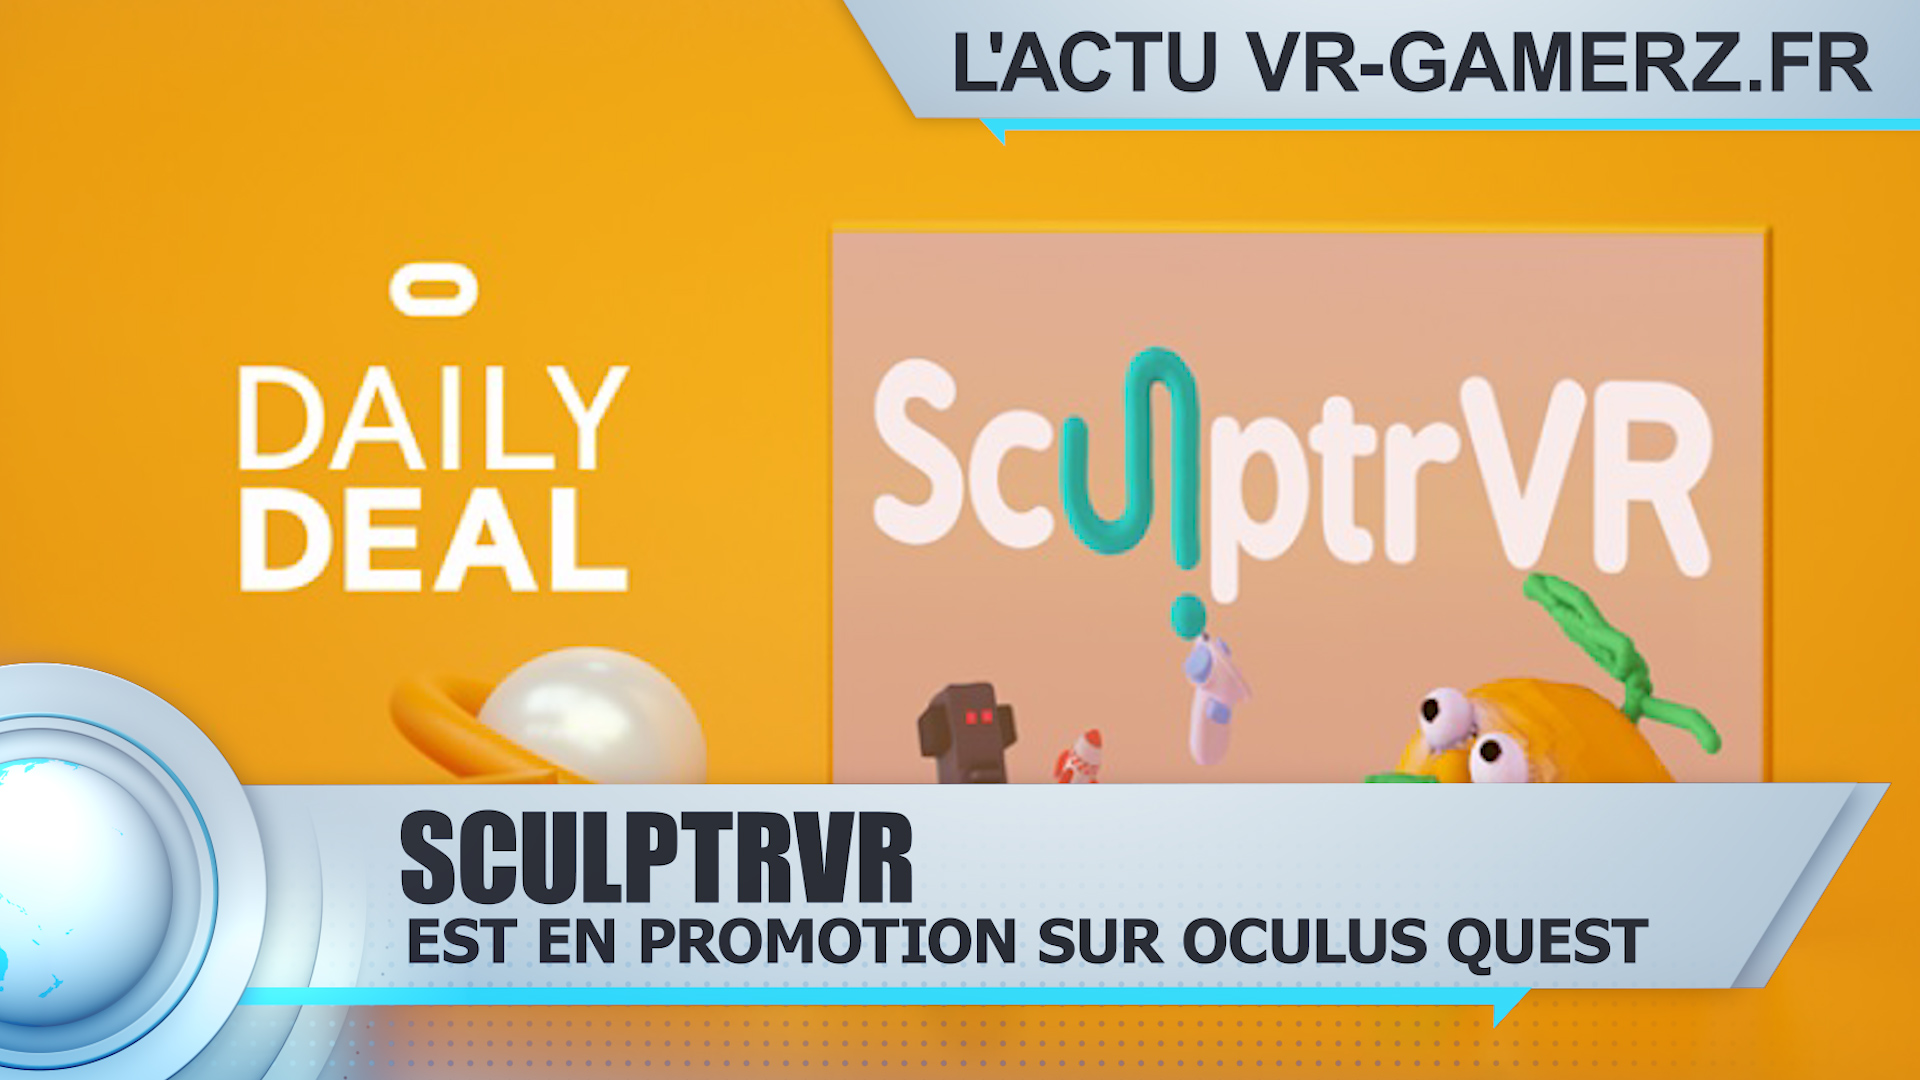 SculptrVR est en promotion sur Oculus quest !